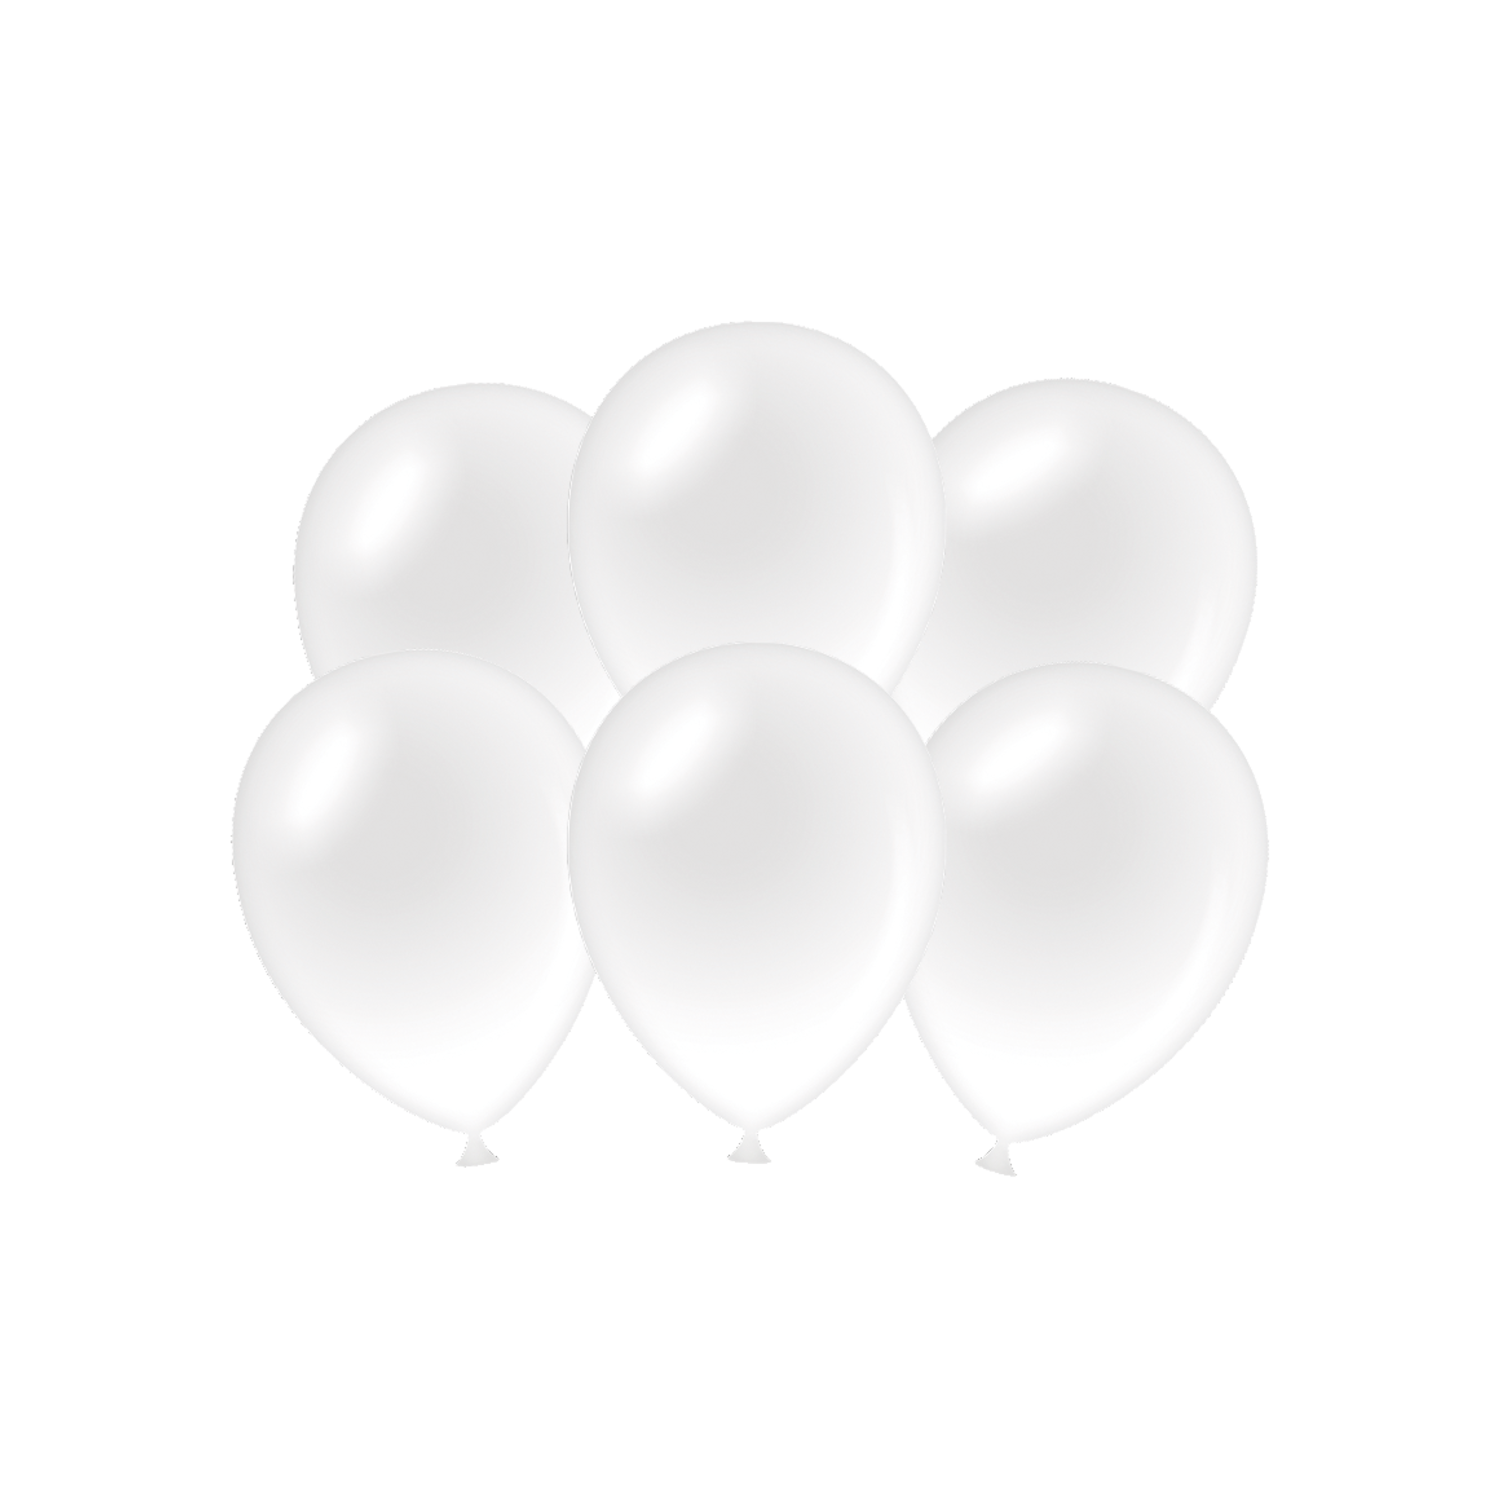 Palloncini da festa bianco metallizzato (6pz) - Partywinkel